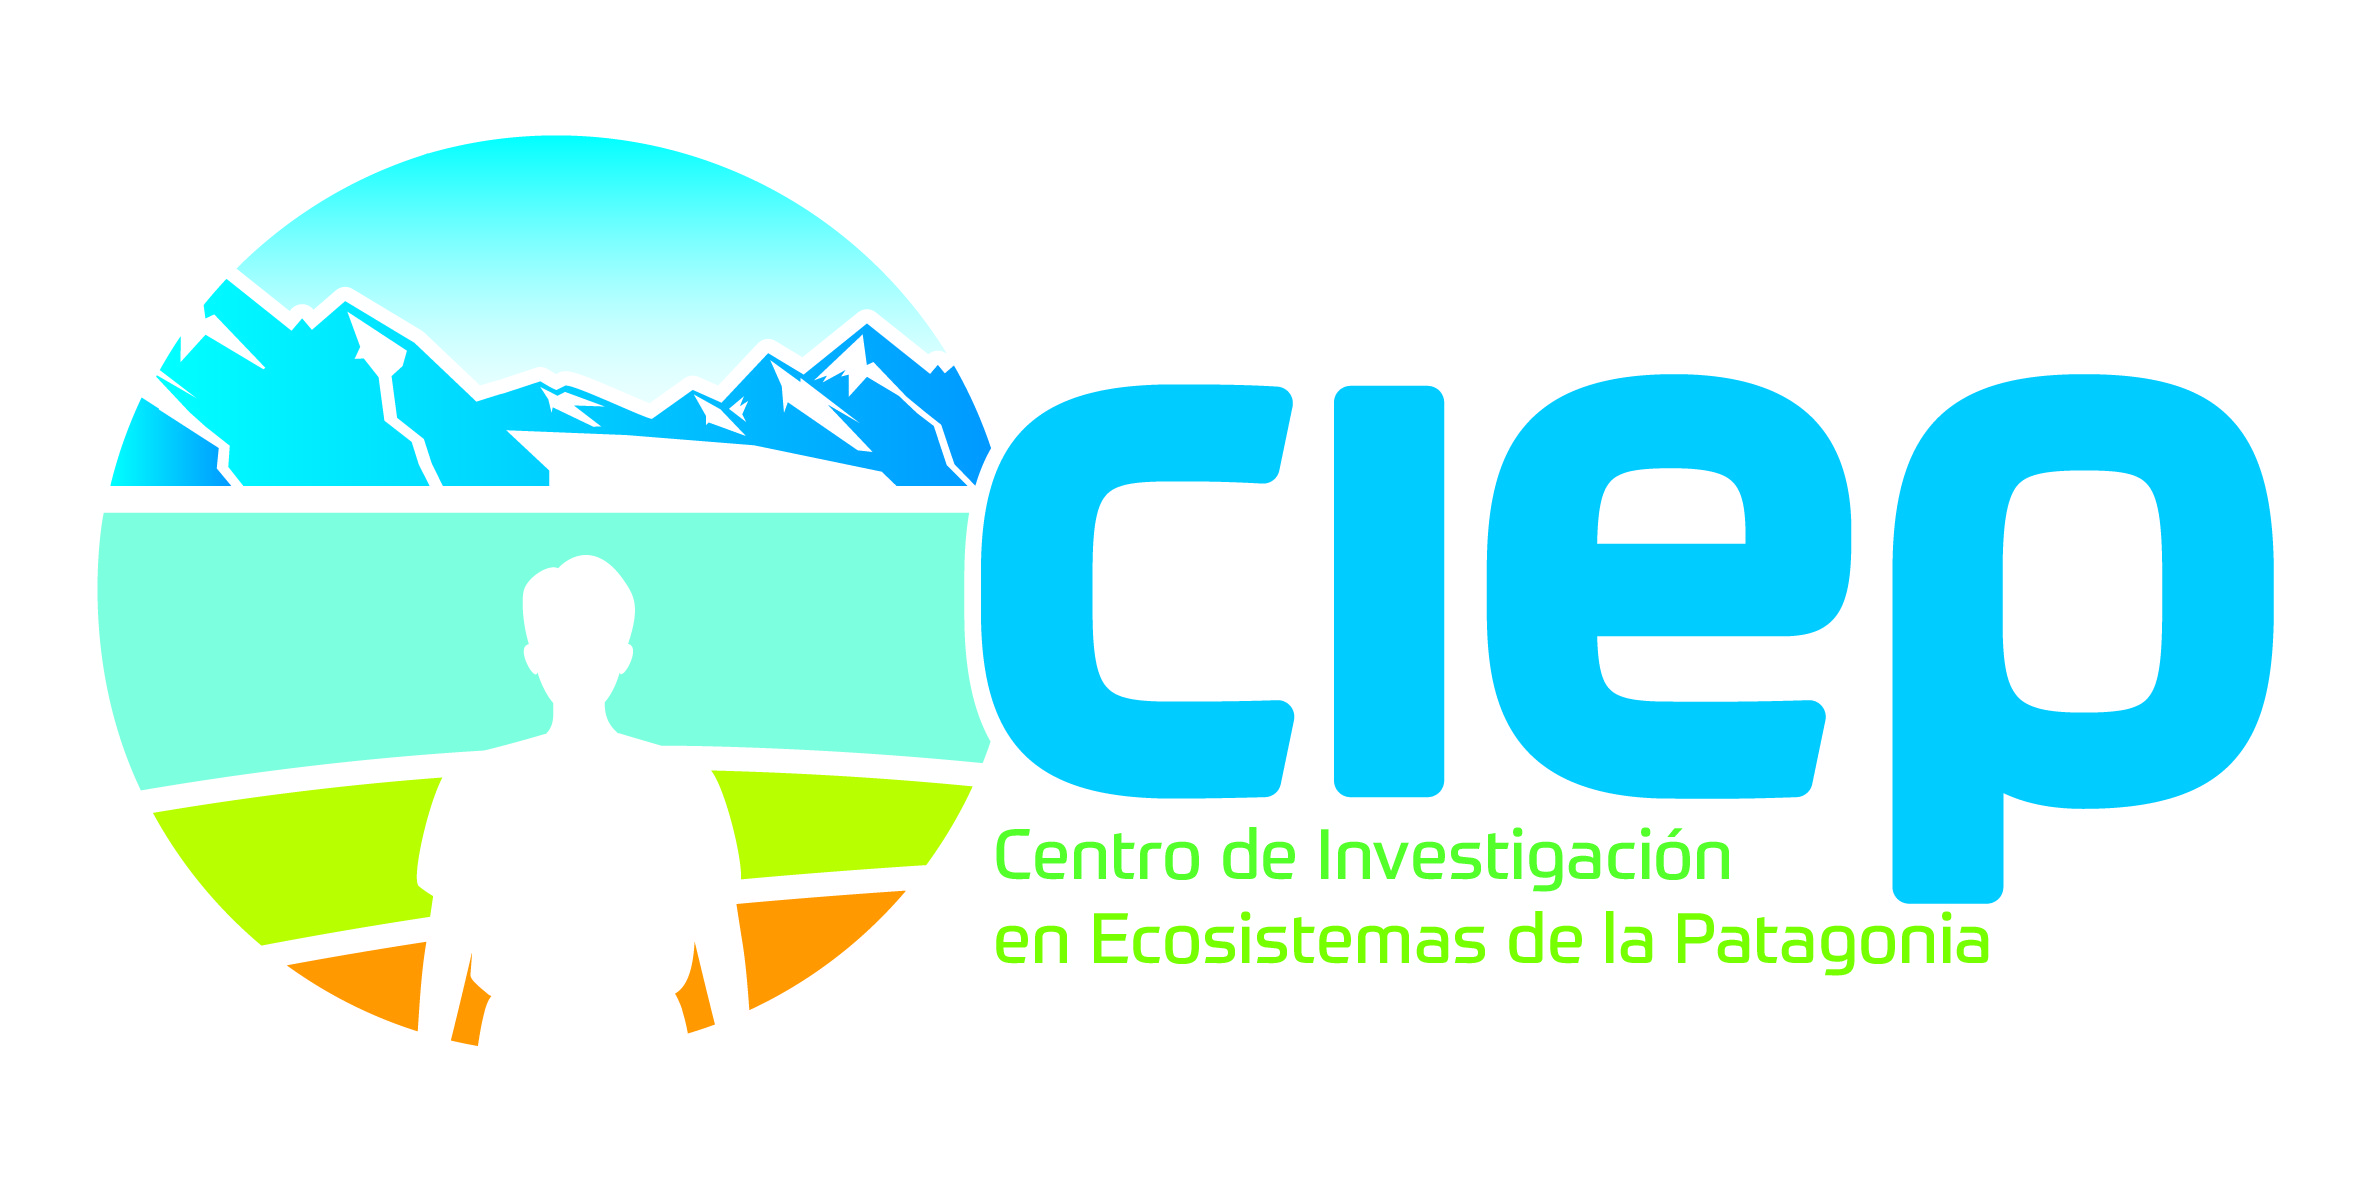 Centro de Investigación en Ecosistemas de la Patagonia